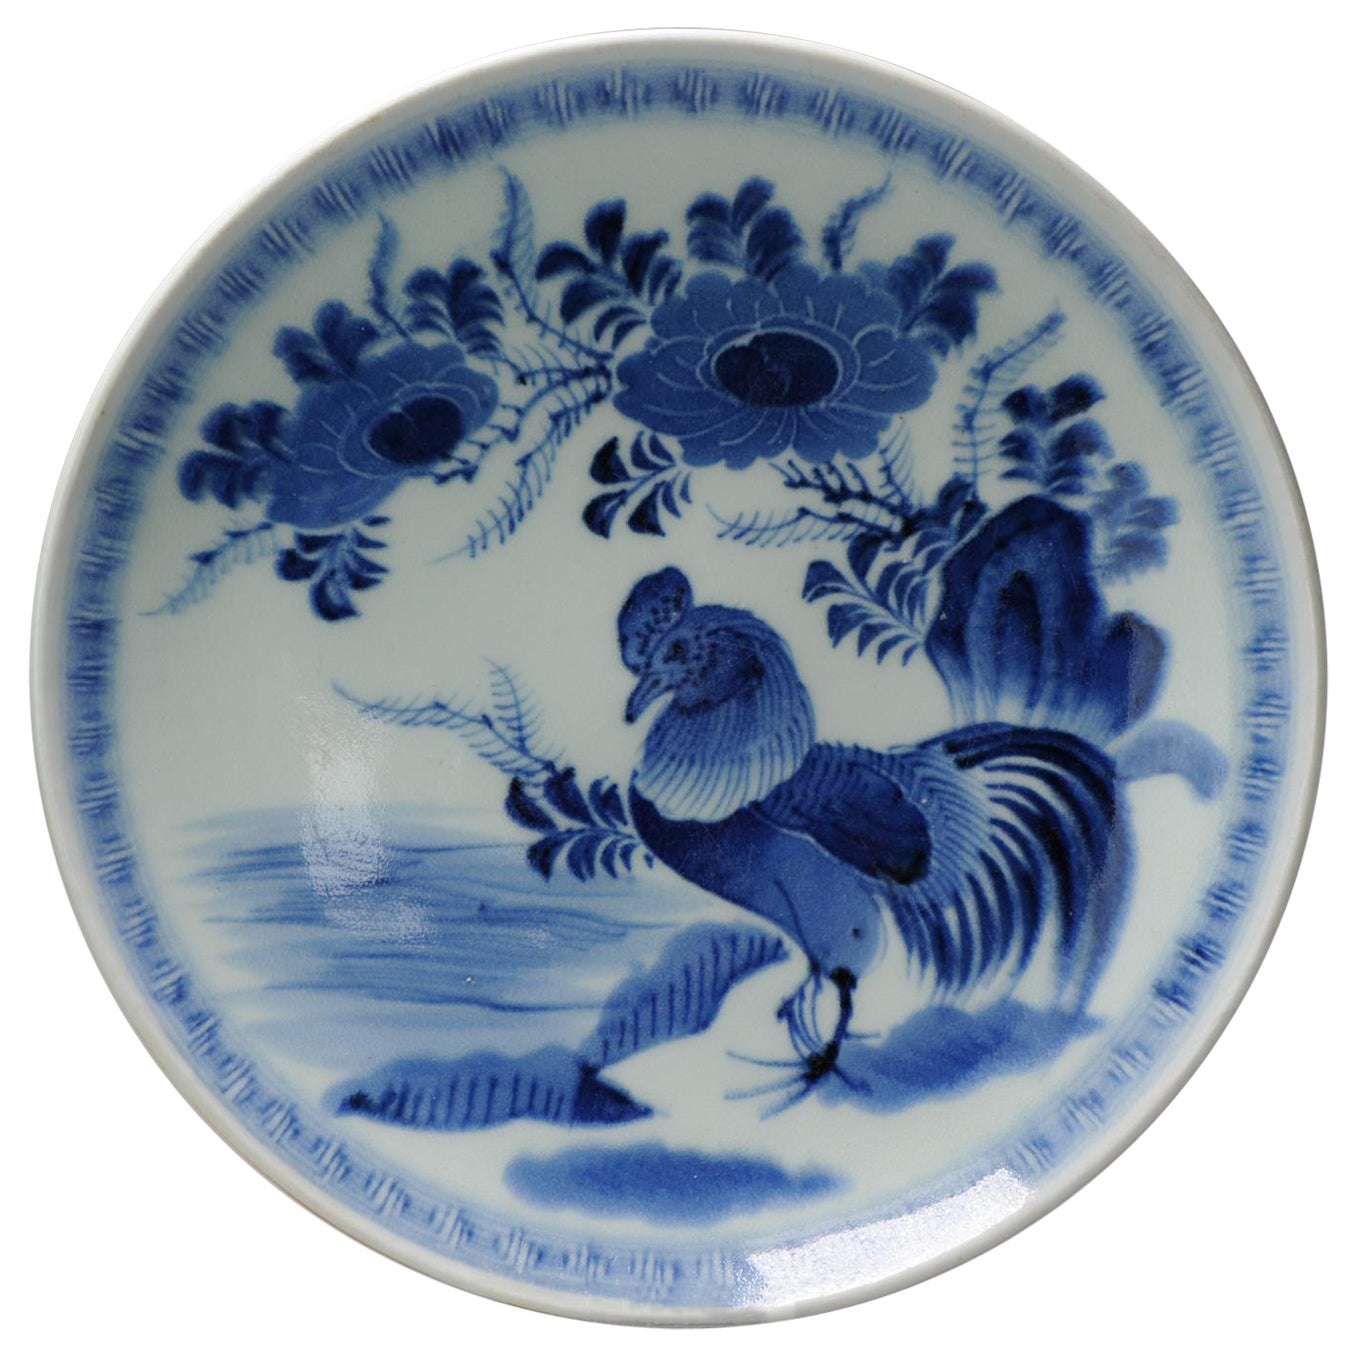 Antiker japanischer Porzellan- Hahnenteller aus dem 18. Jahrhundert, blau-weiße Schale